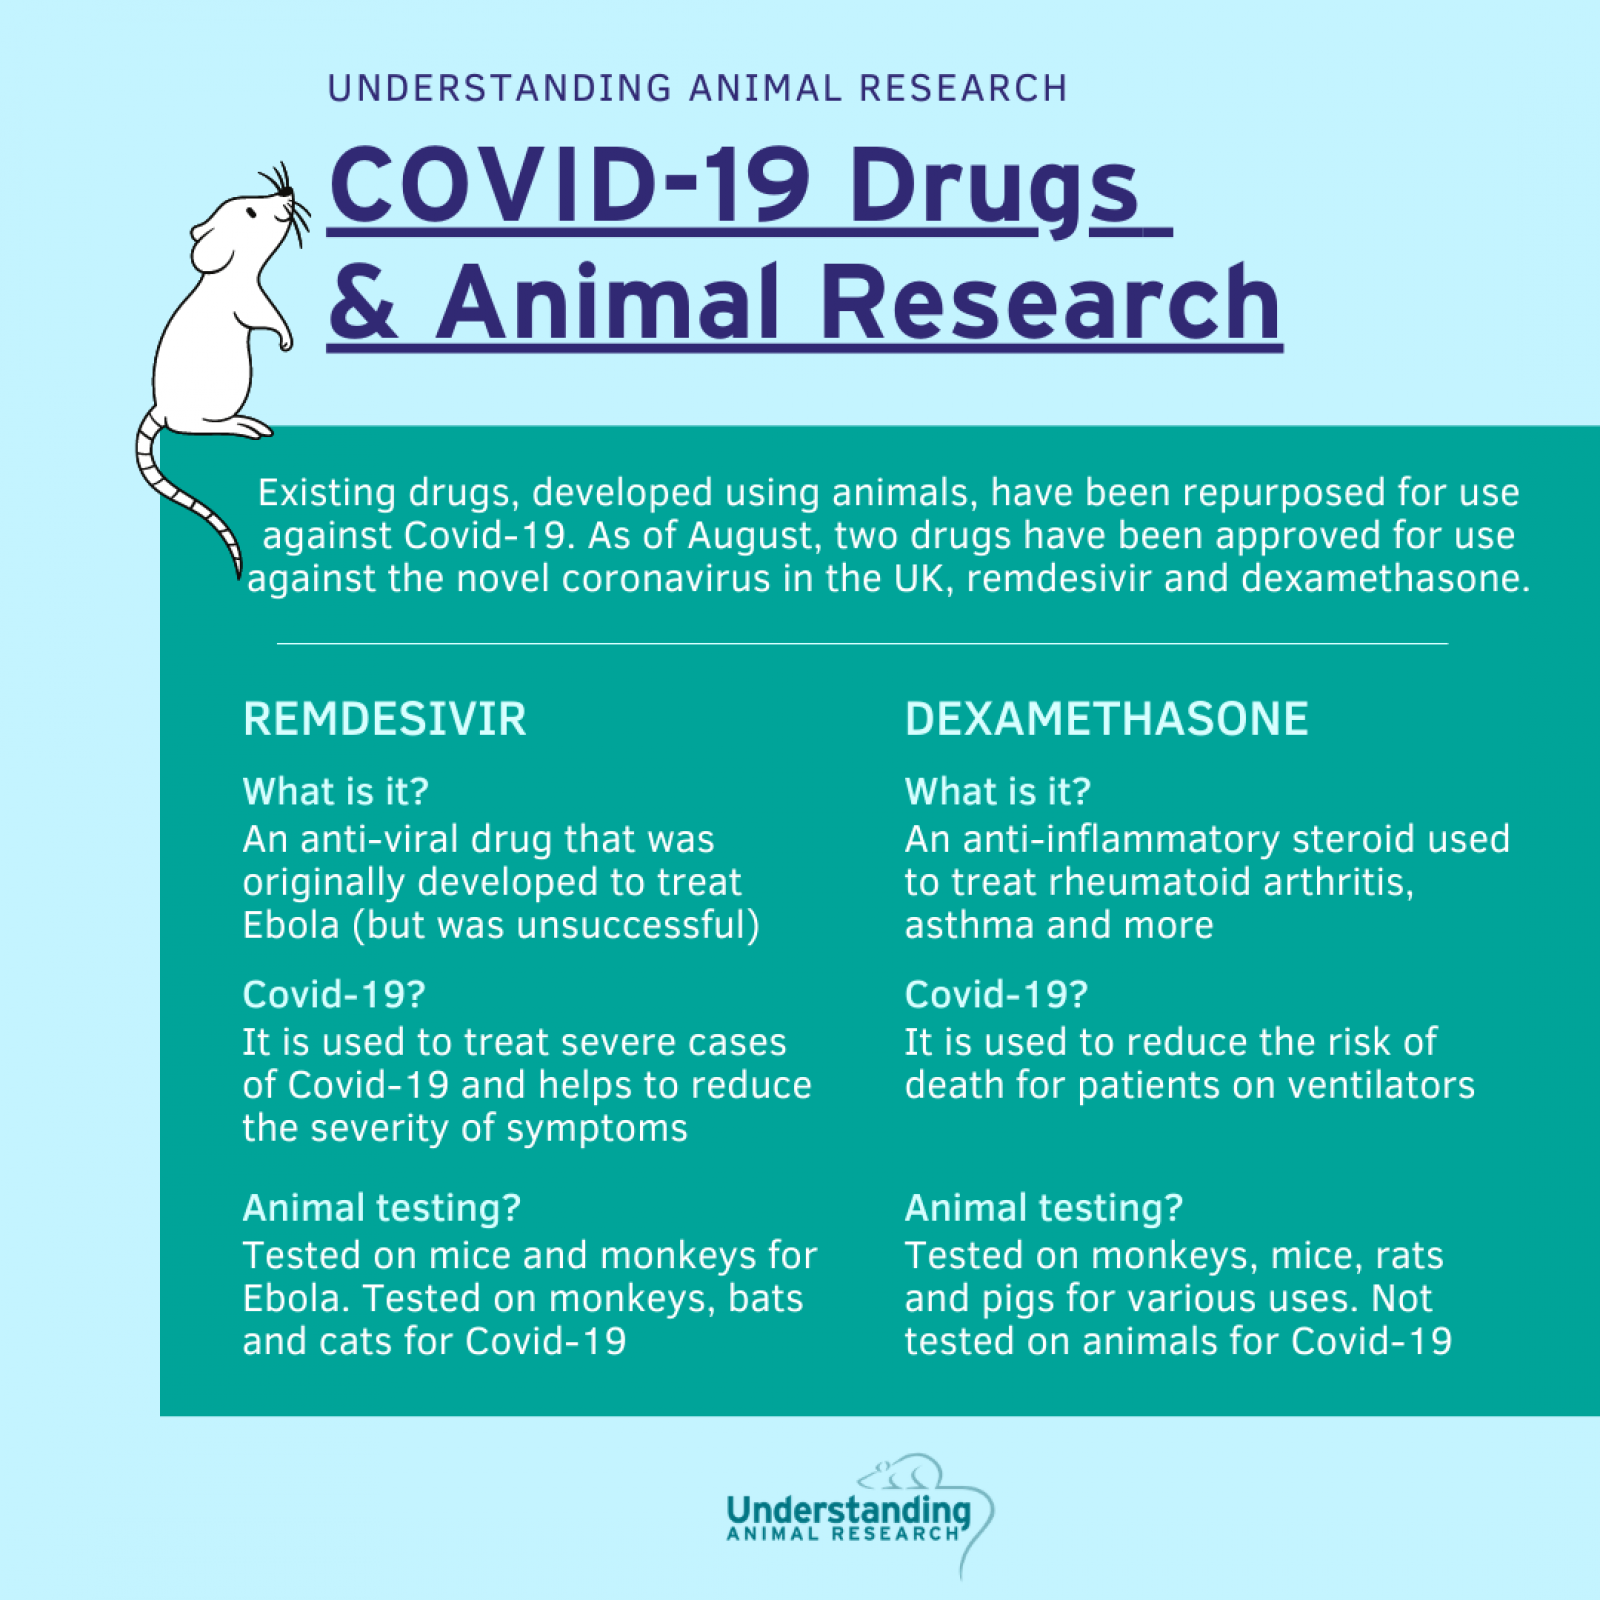 Drugs repurposed to treat COVID